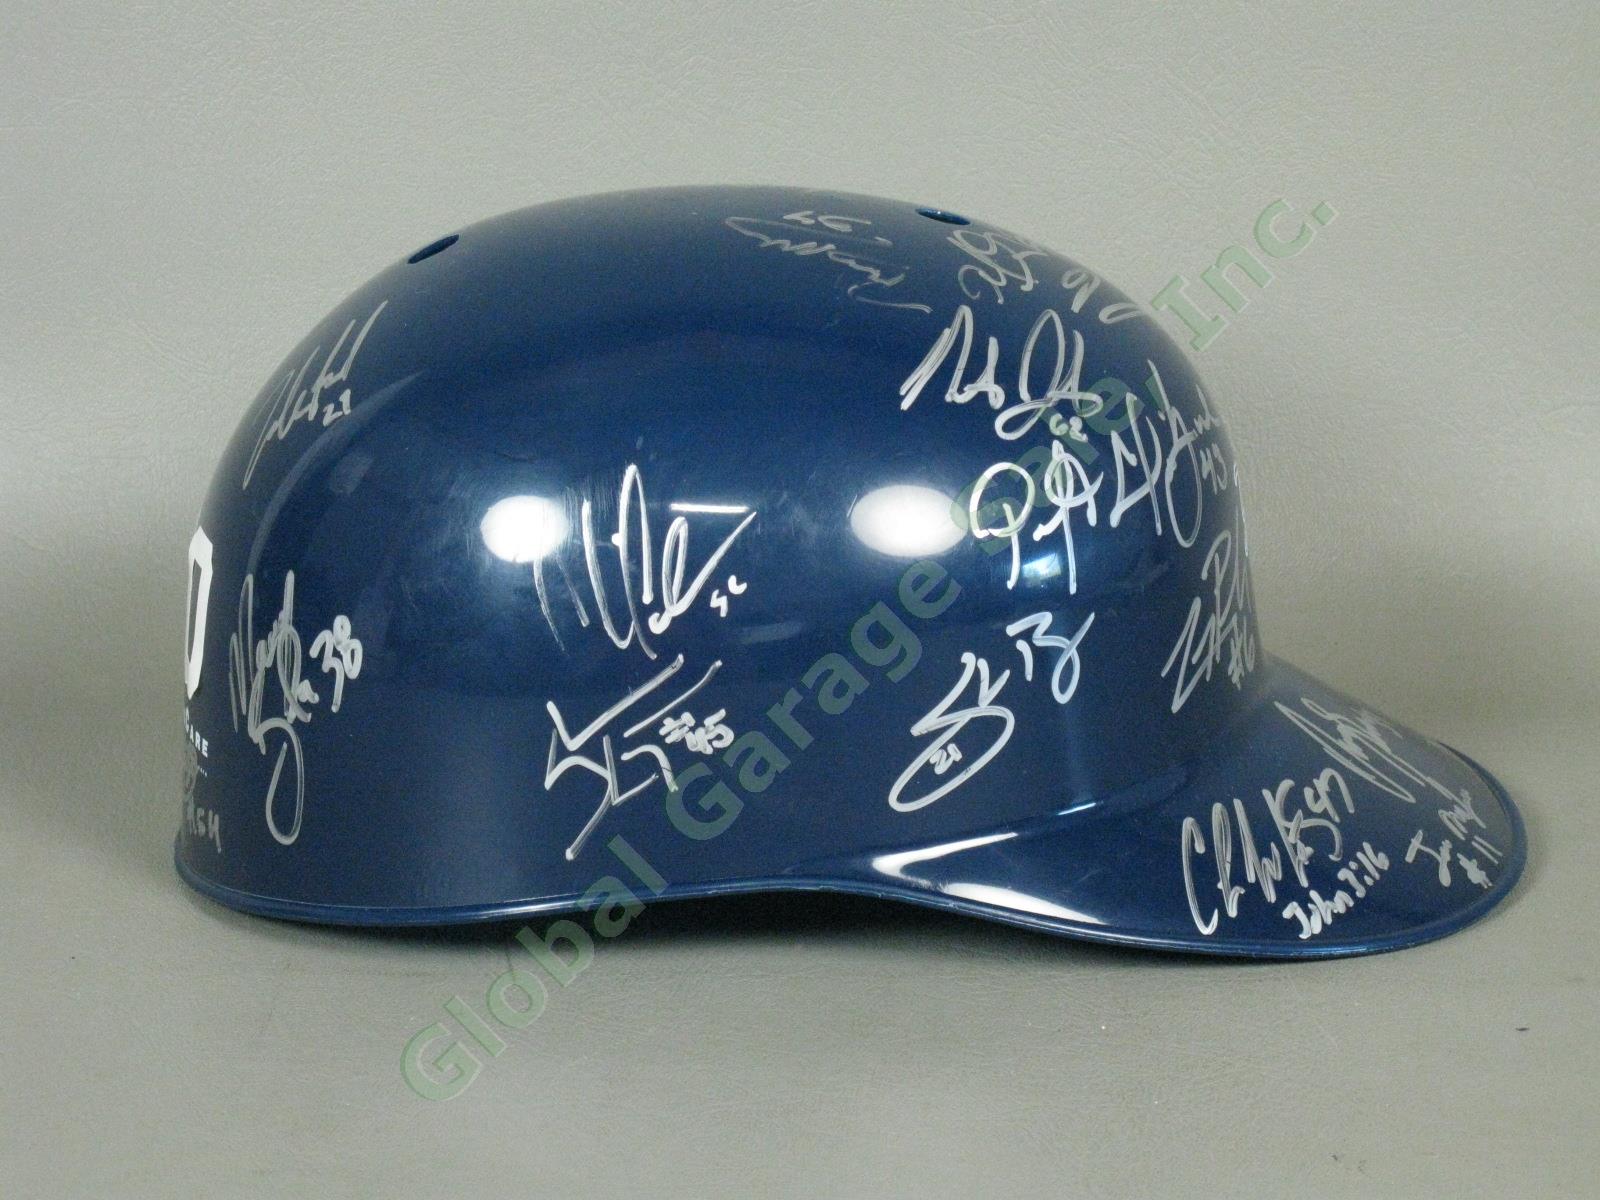 2010 Staten Island Yankees Team Signed Baseball Helmet MiLB MLB NYPL New York NR 1